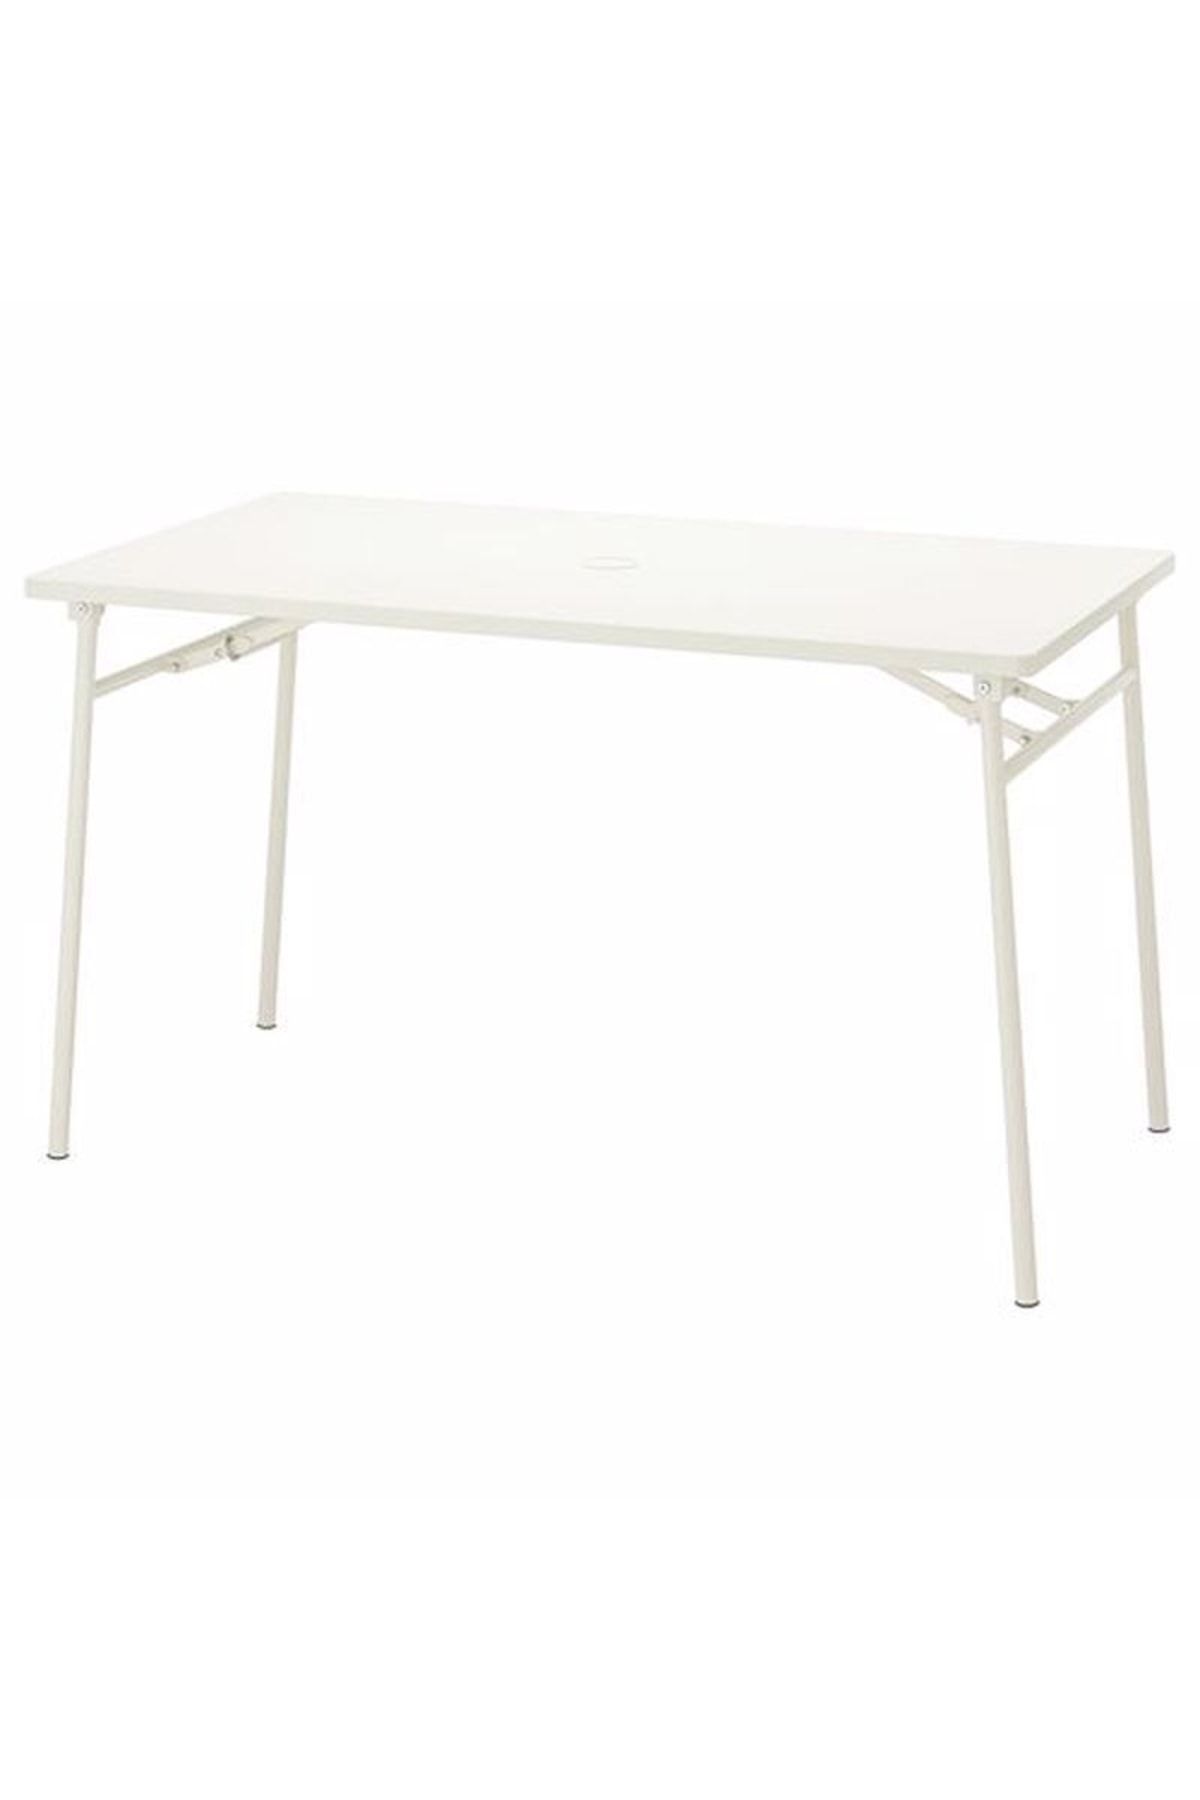 IKEA Torparö Katlanabilir Masa, Beyaz